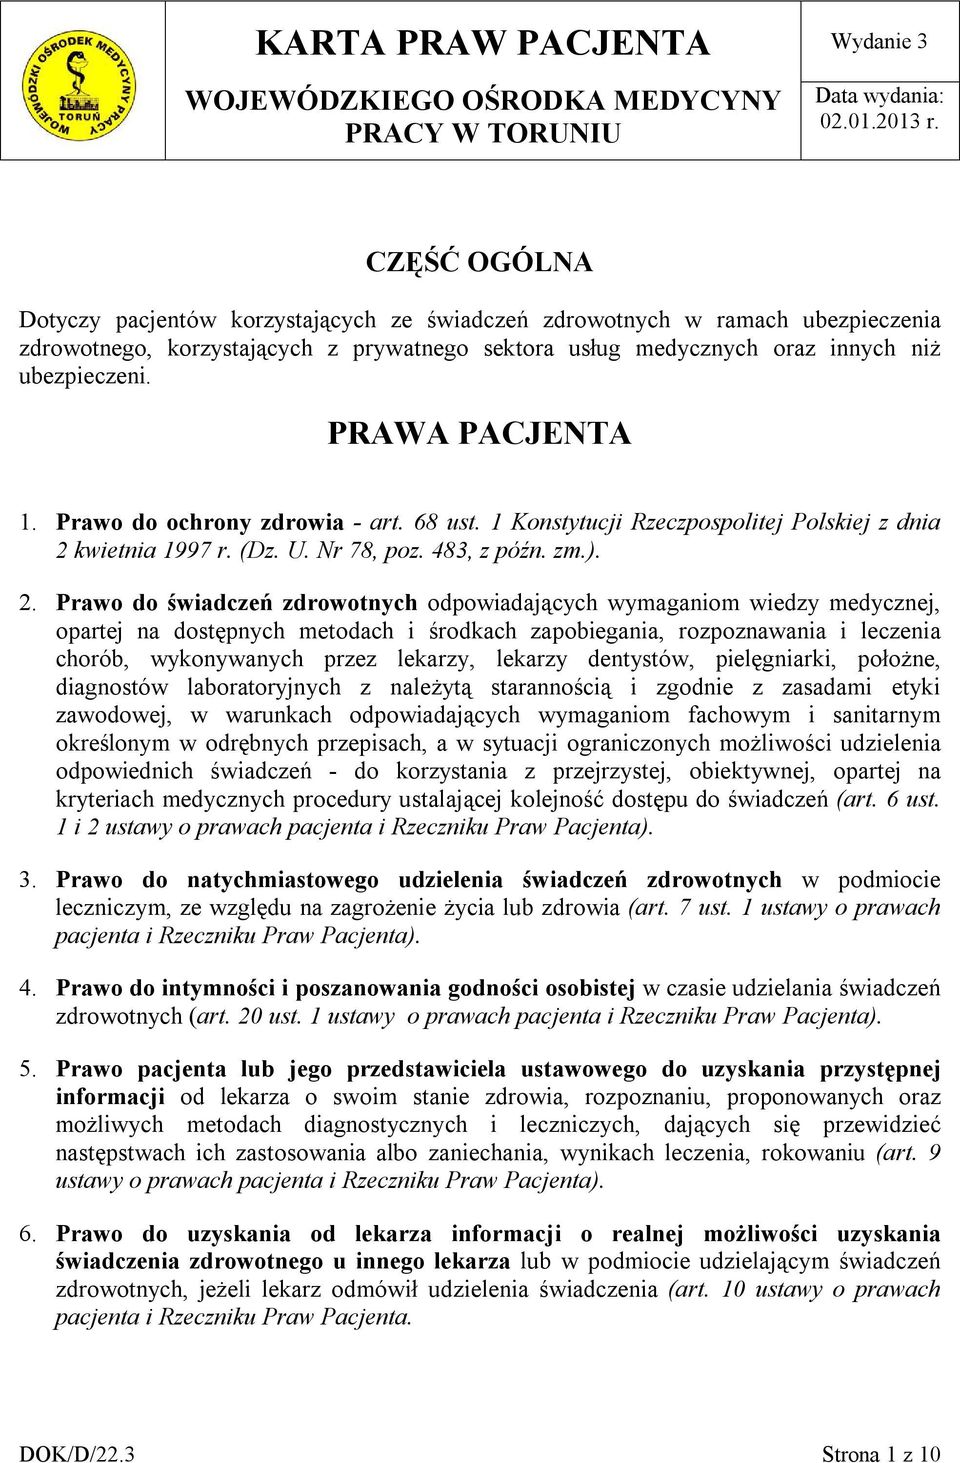 PRAWA PACJENTA 1. Prawo do ochrony zdrowia - art. 68 ust. 1 Konstytucji Rzeczpospolitej Polskiej z dnia 2 